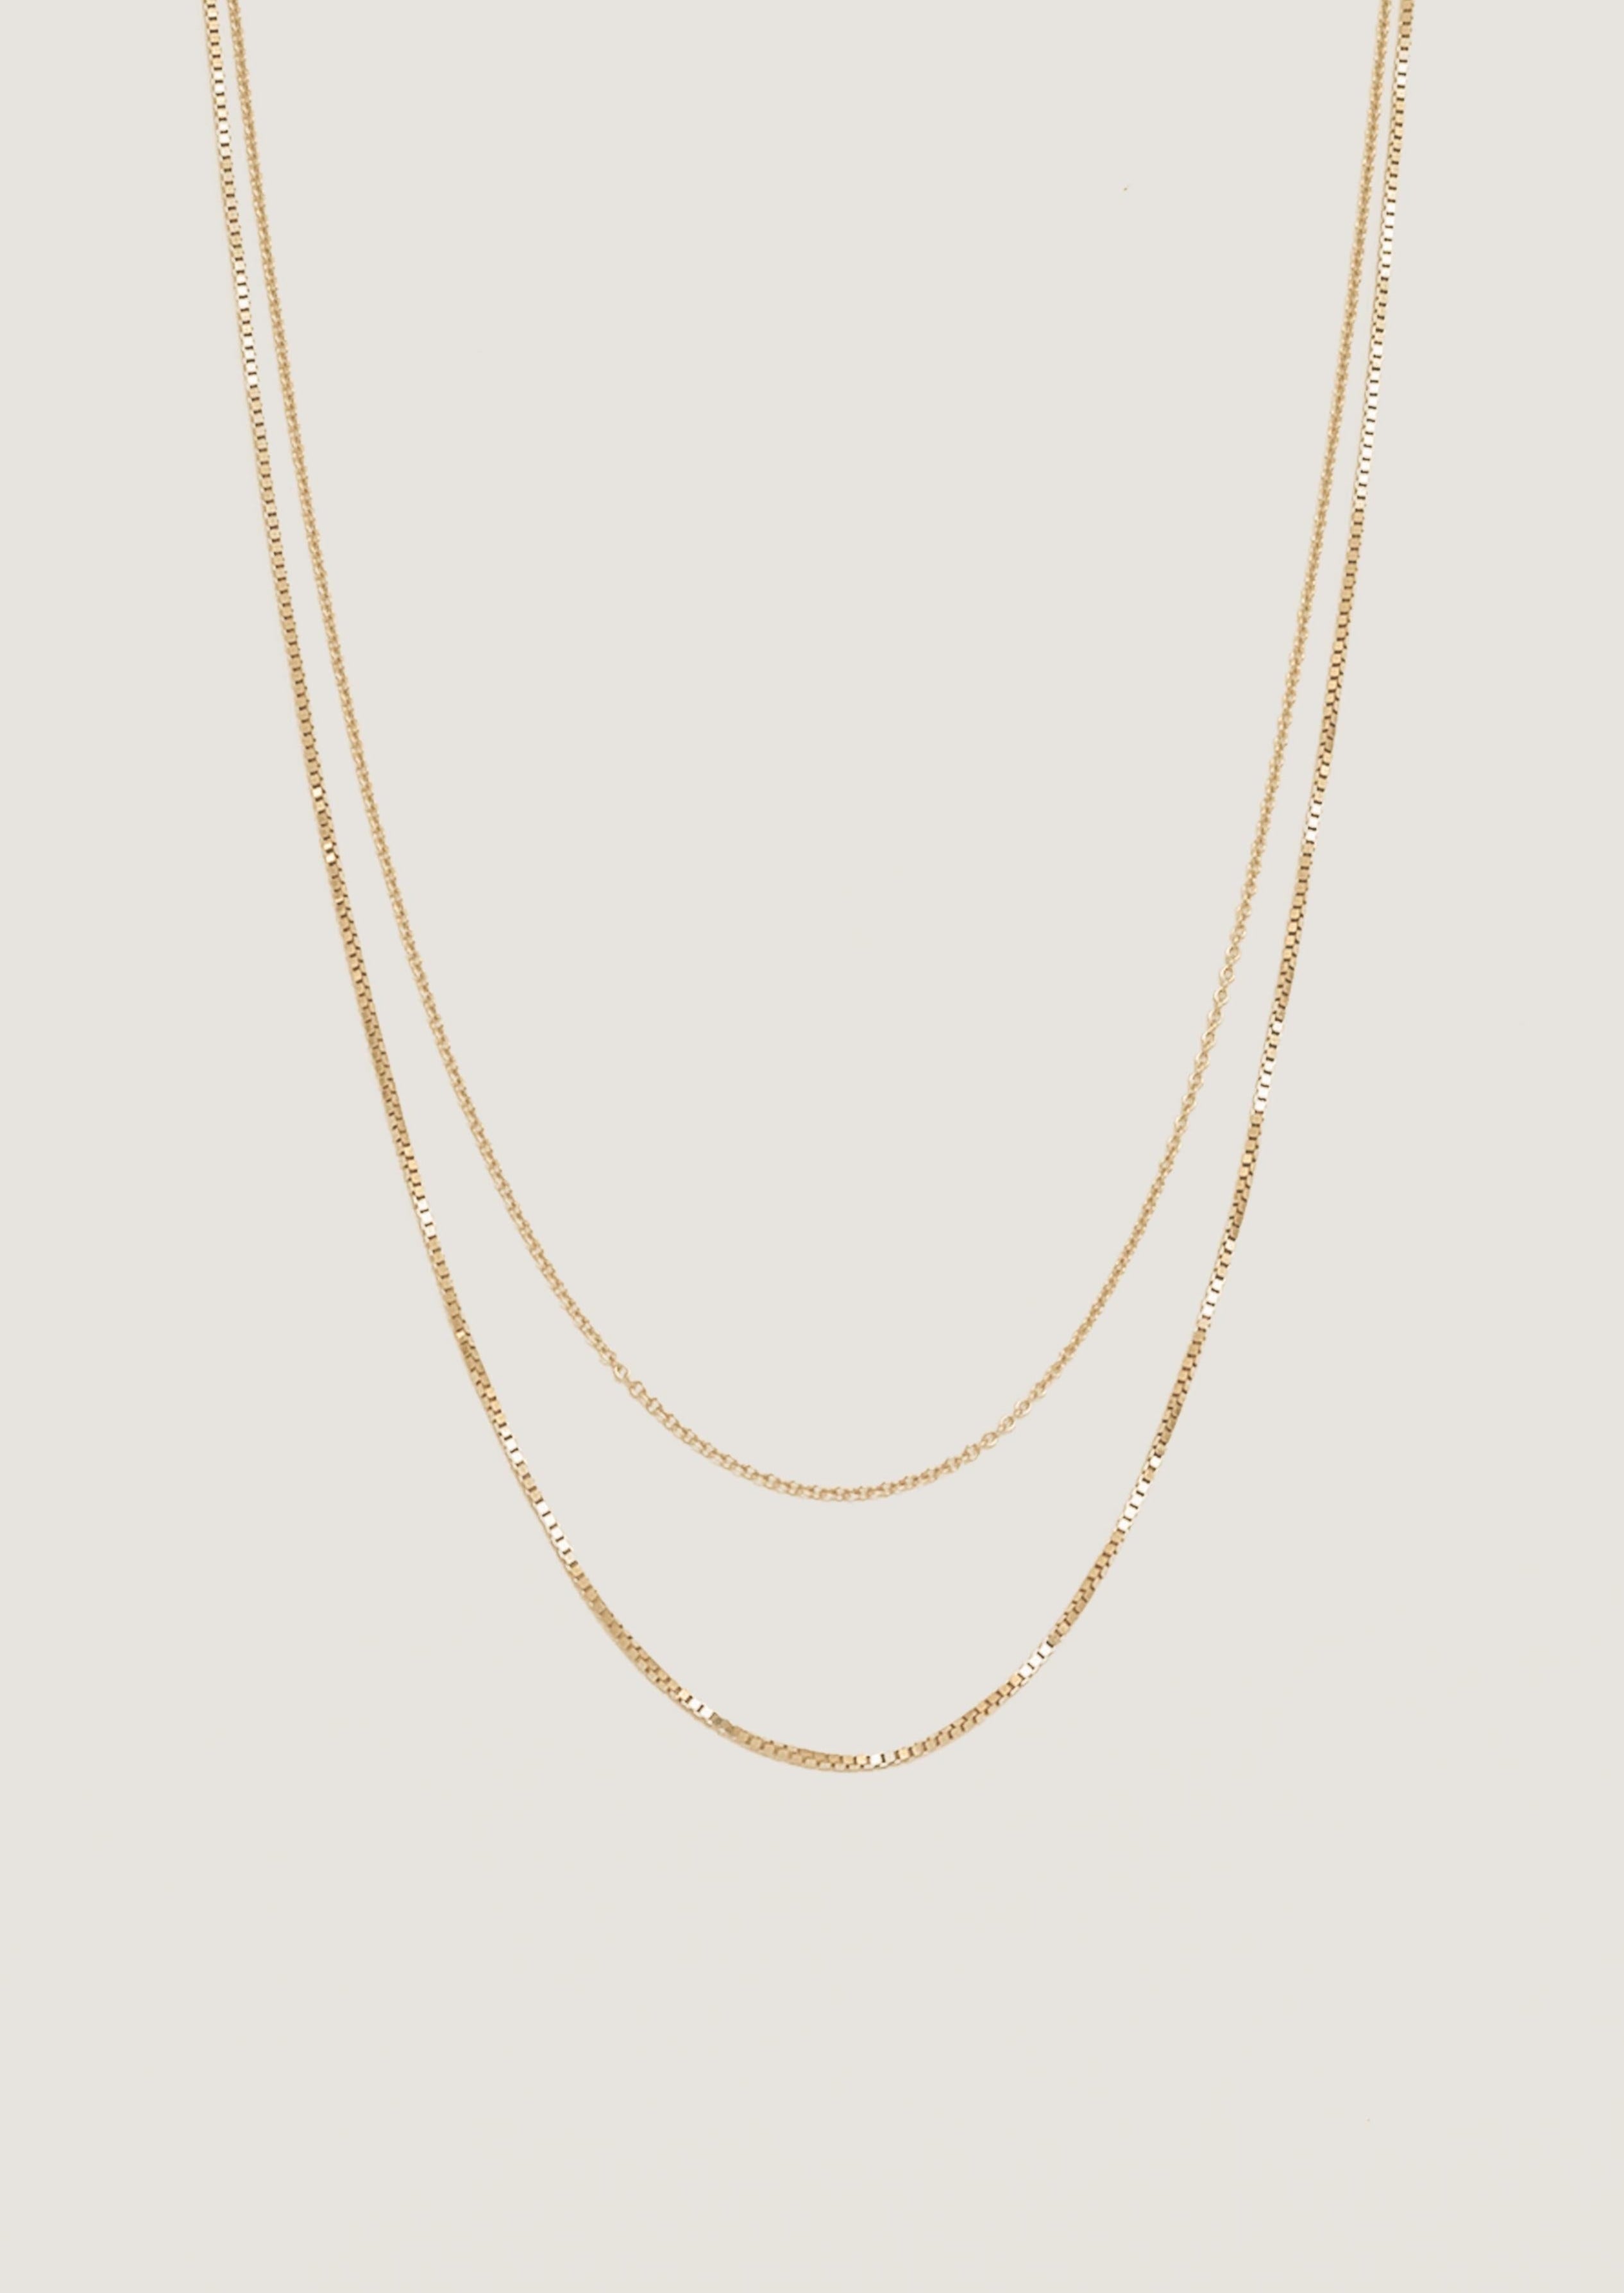 Carter Flat Herringbone Chain II 14K Gold - Kinn 18-20